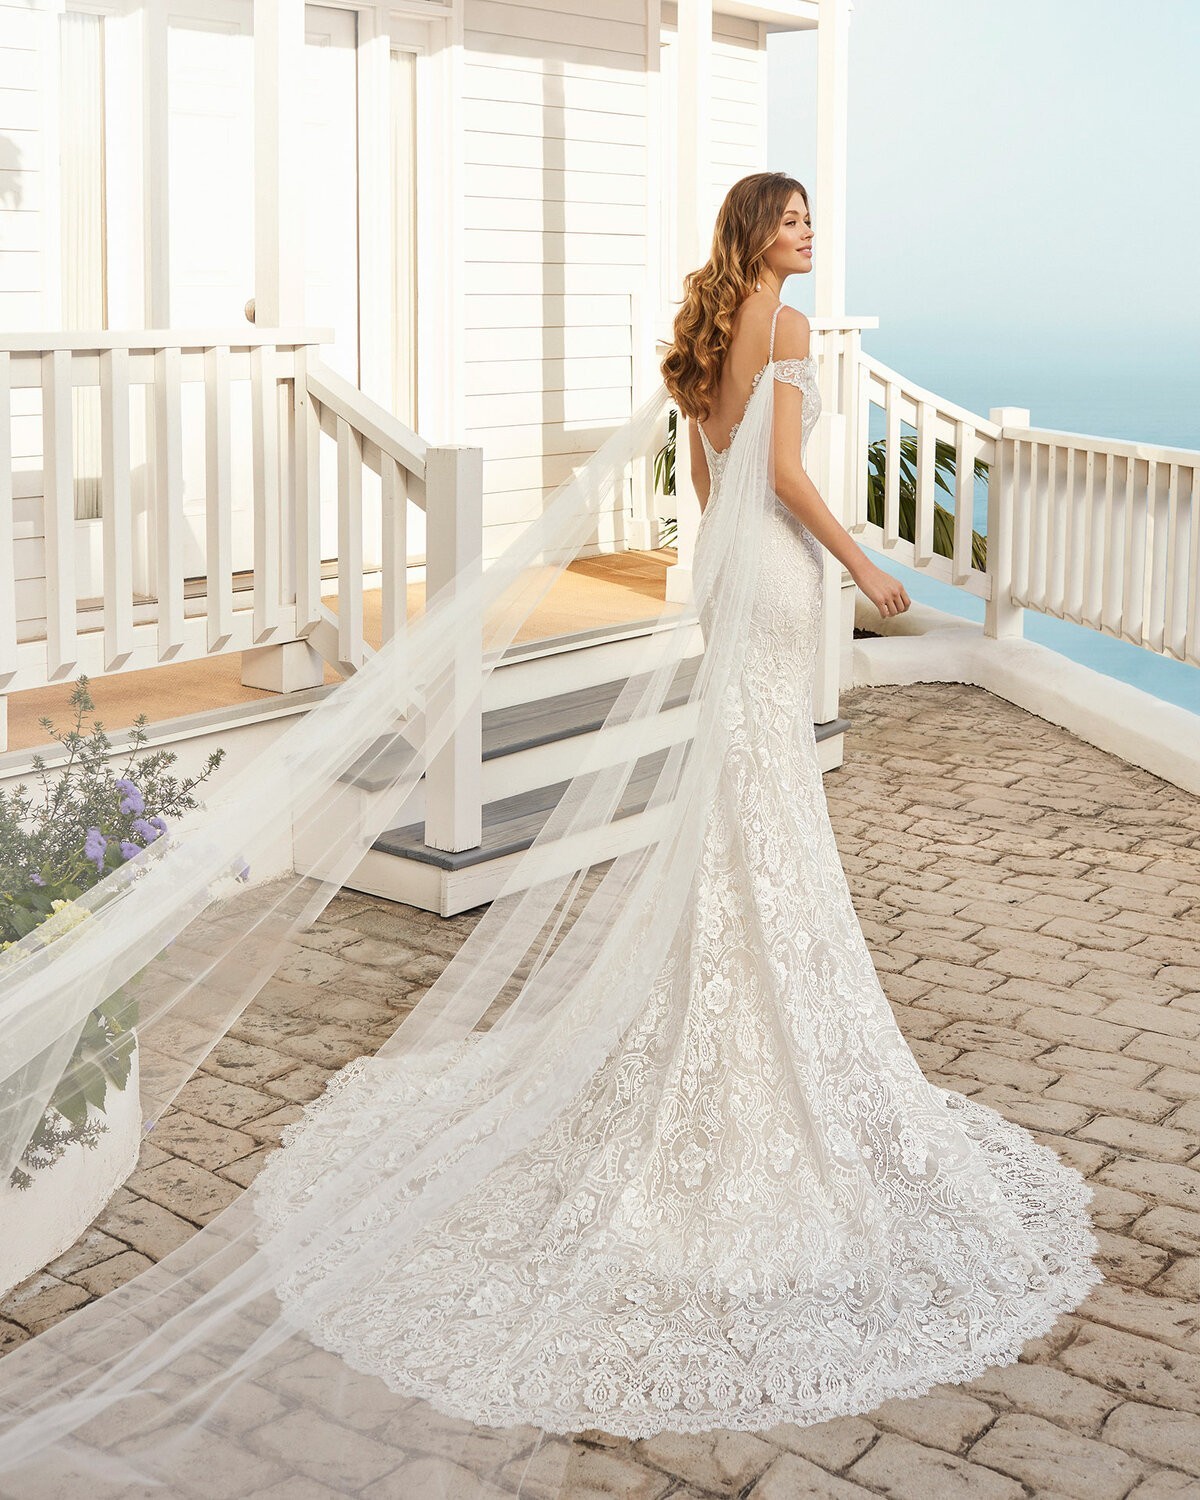 CAYTLIN - abito da sposa collezione 2020 - Rosa Clarà